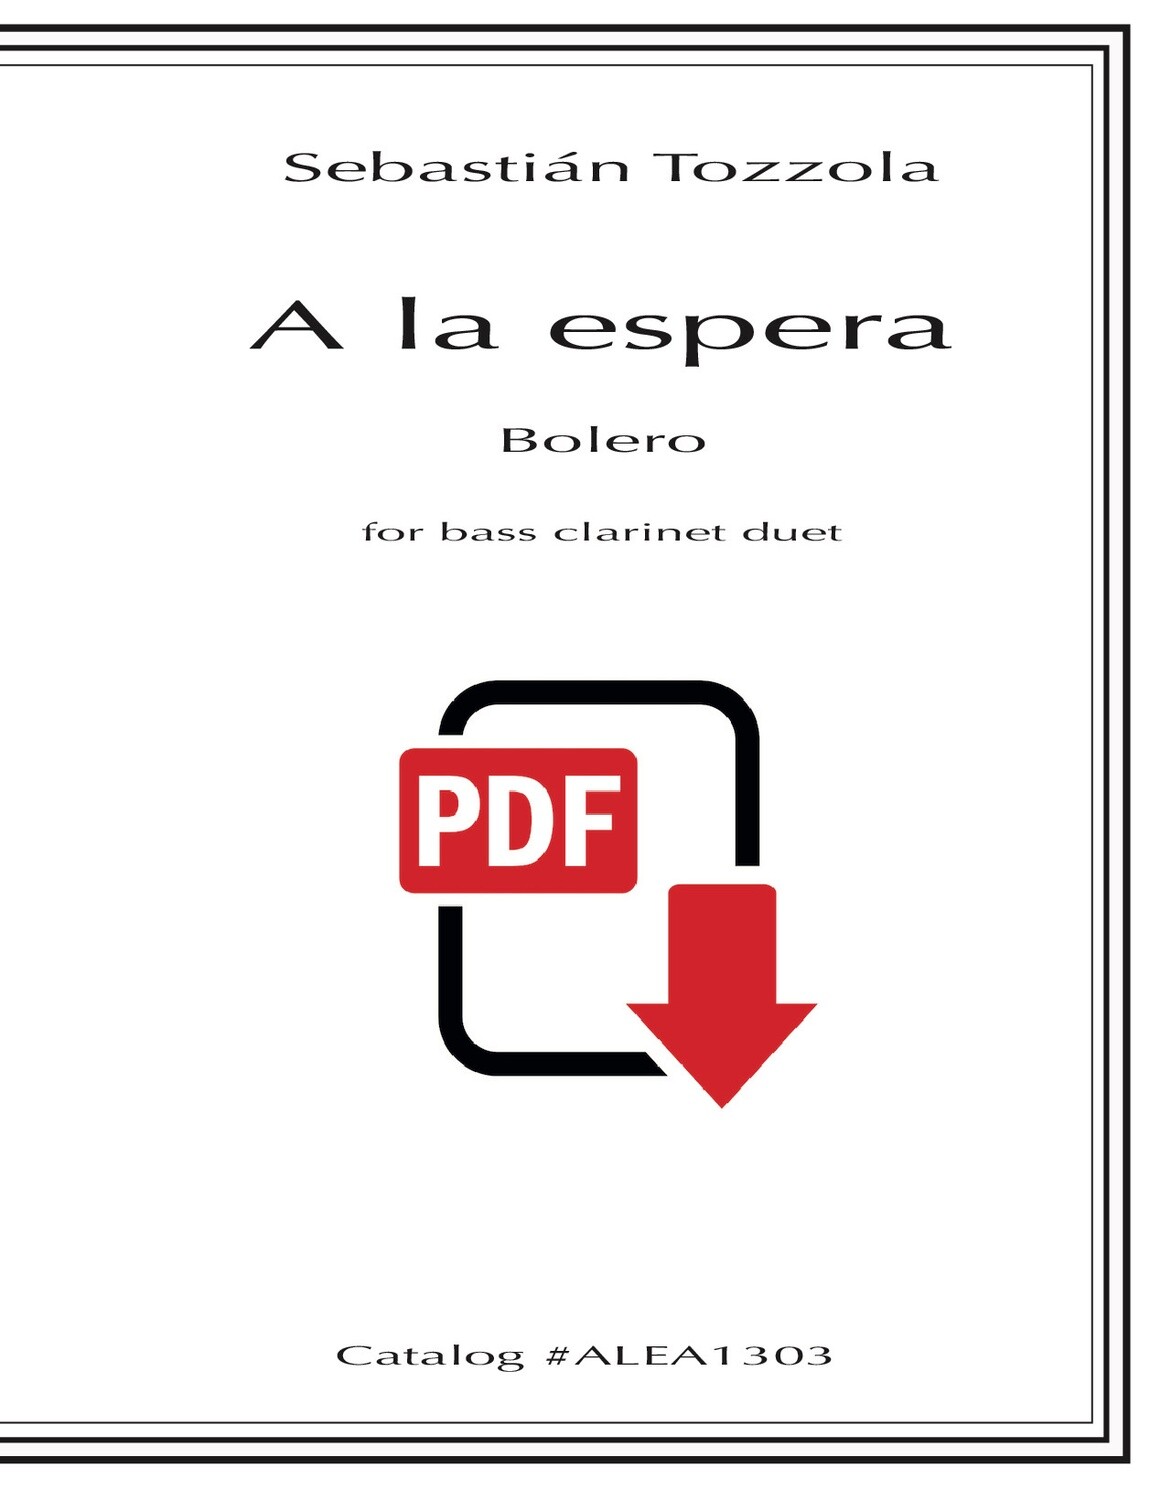 Tozzola: A la espera (PDF)